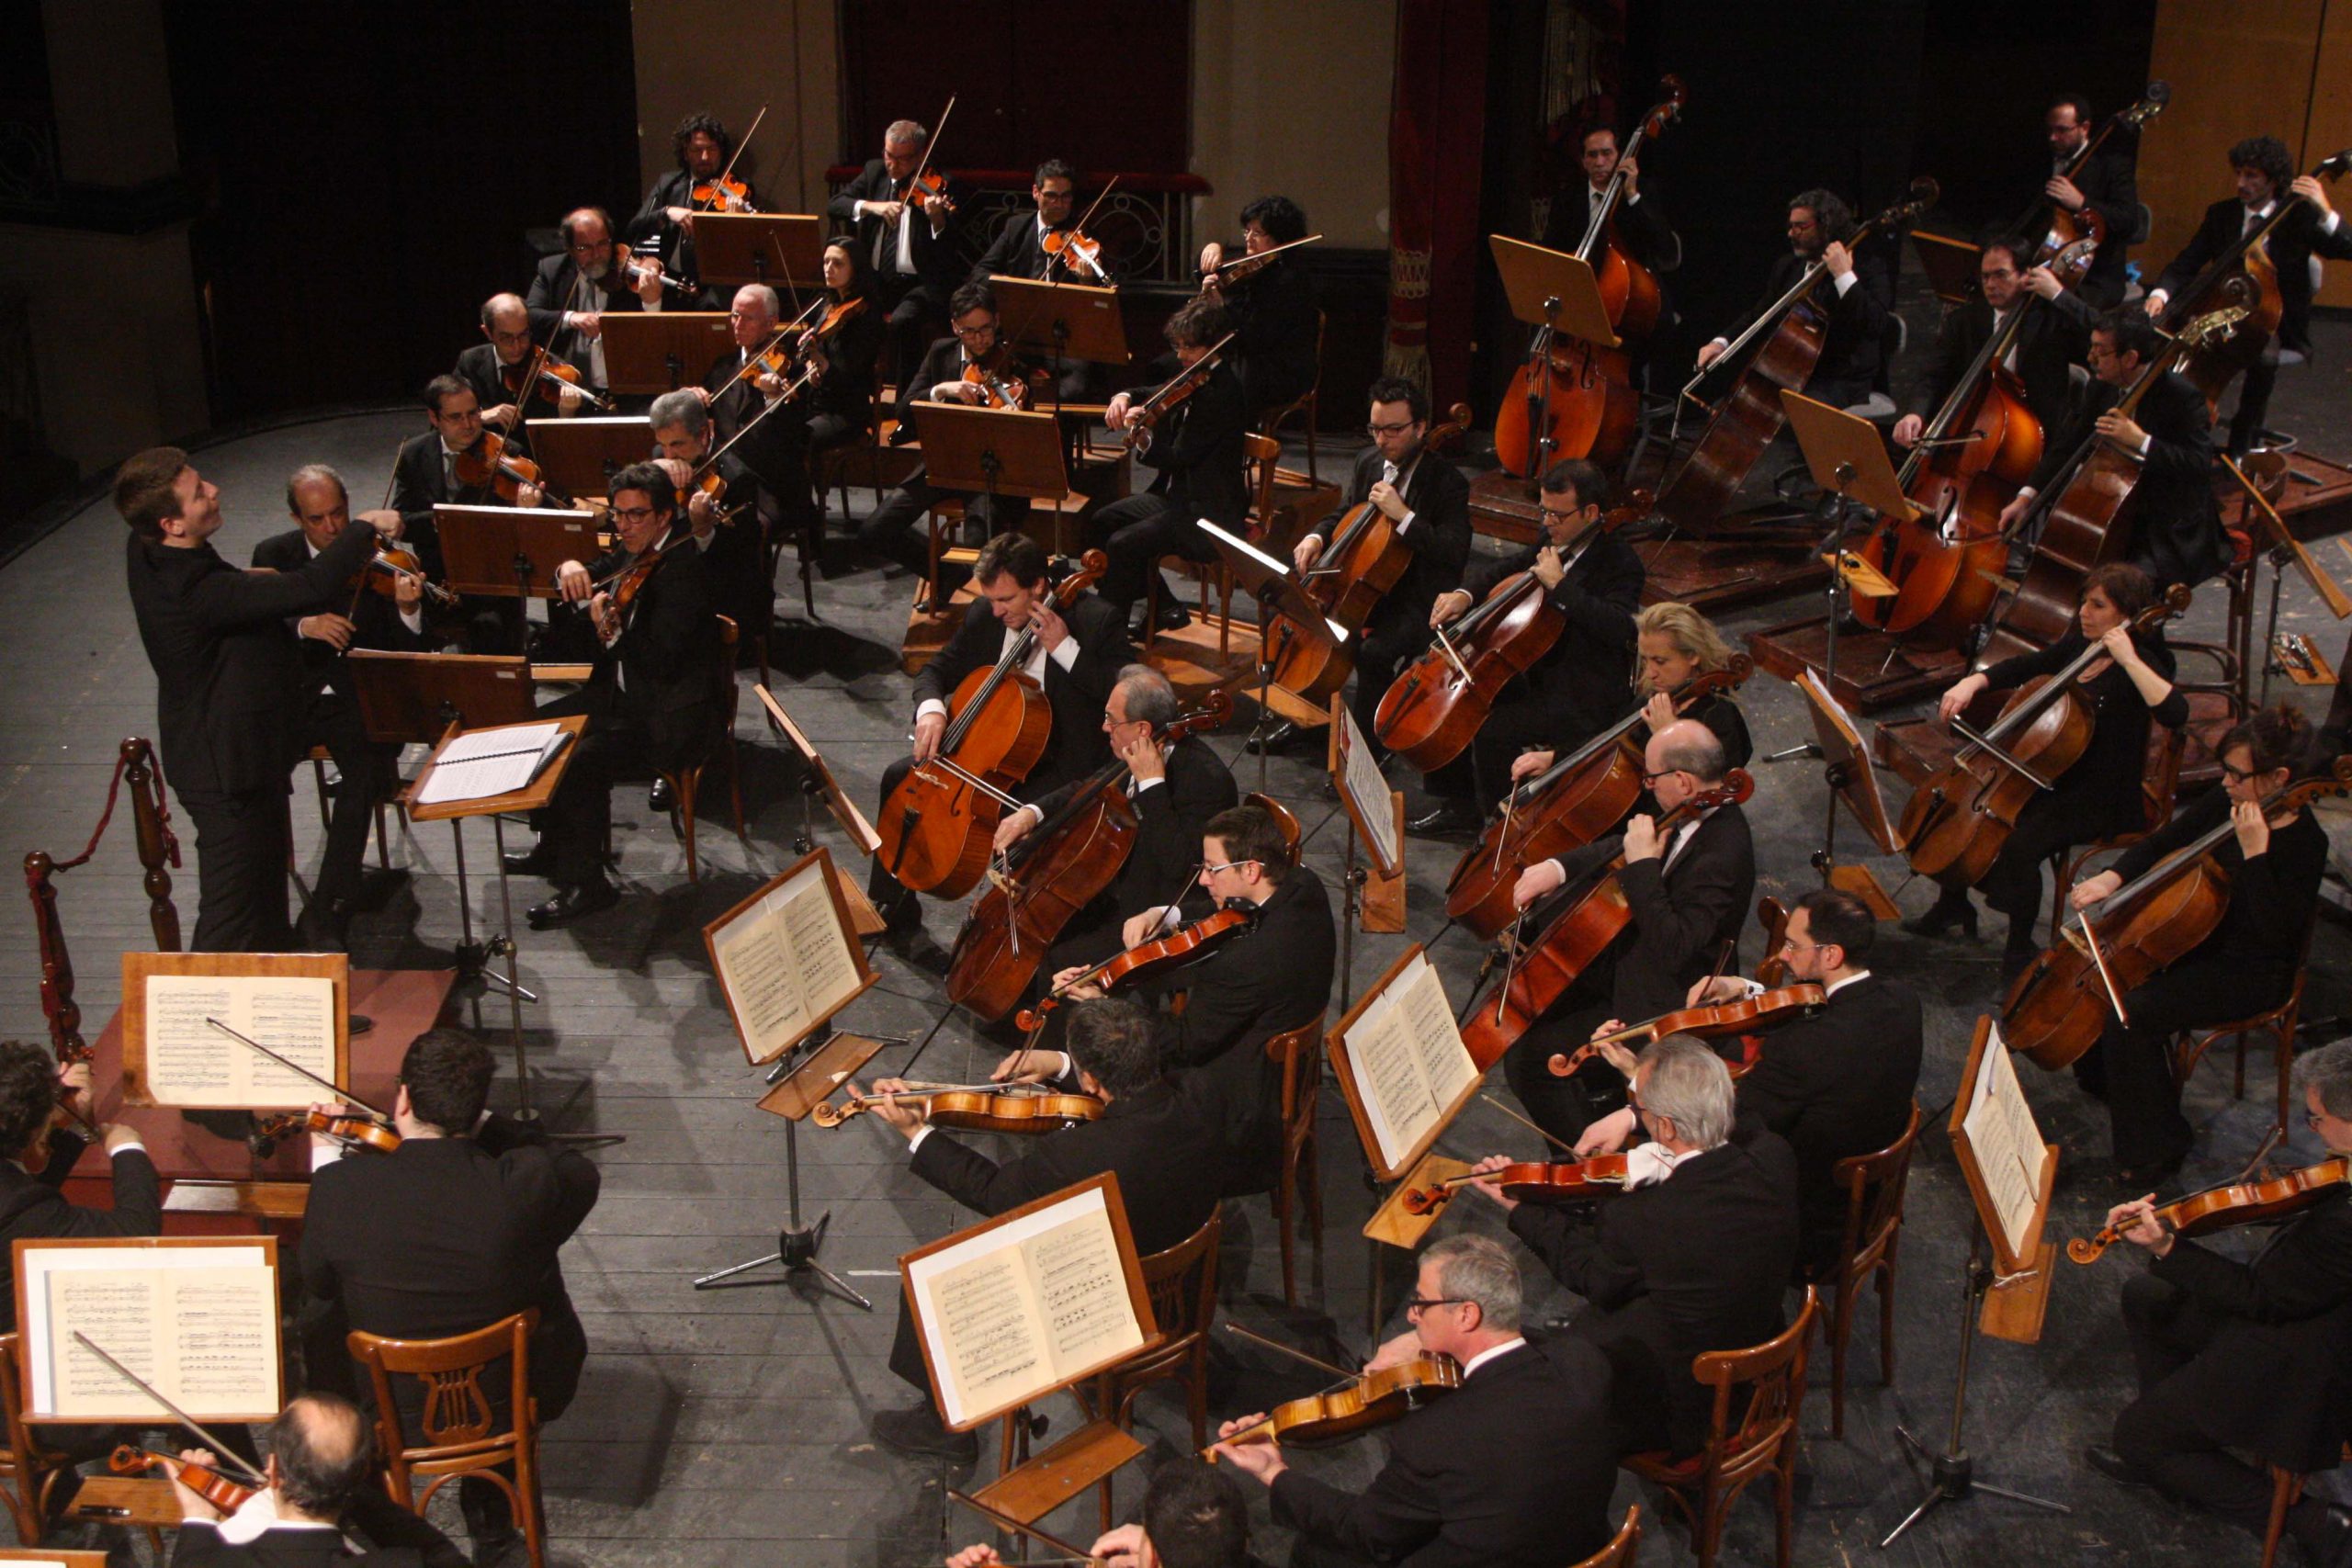 Orchestra sinfonica siciliana. Allarme dei sindacati: “stagione a rischio”